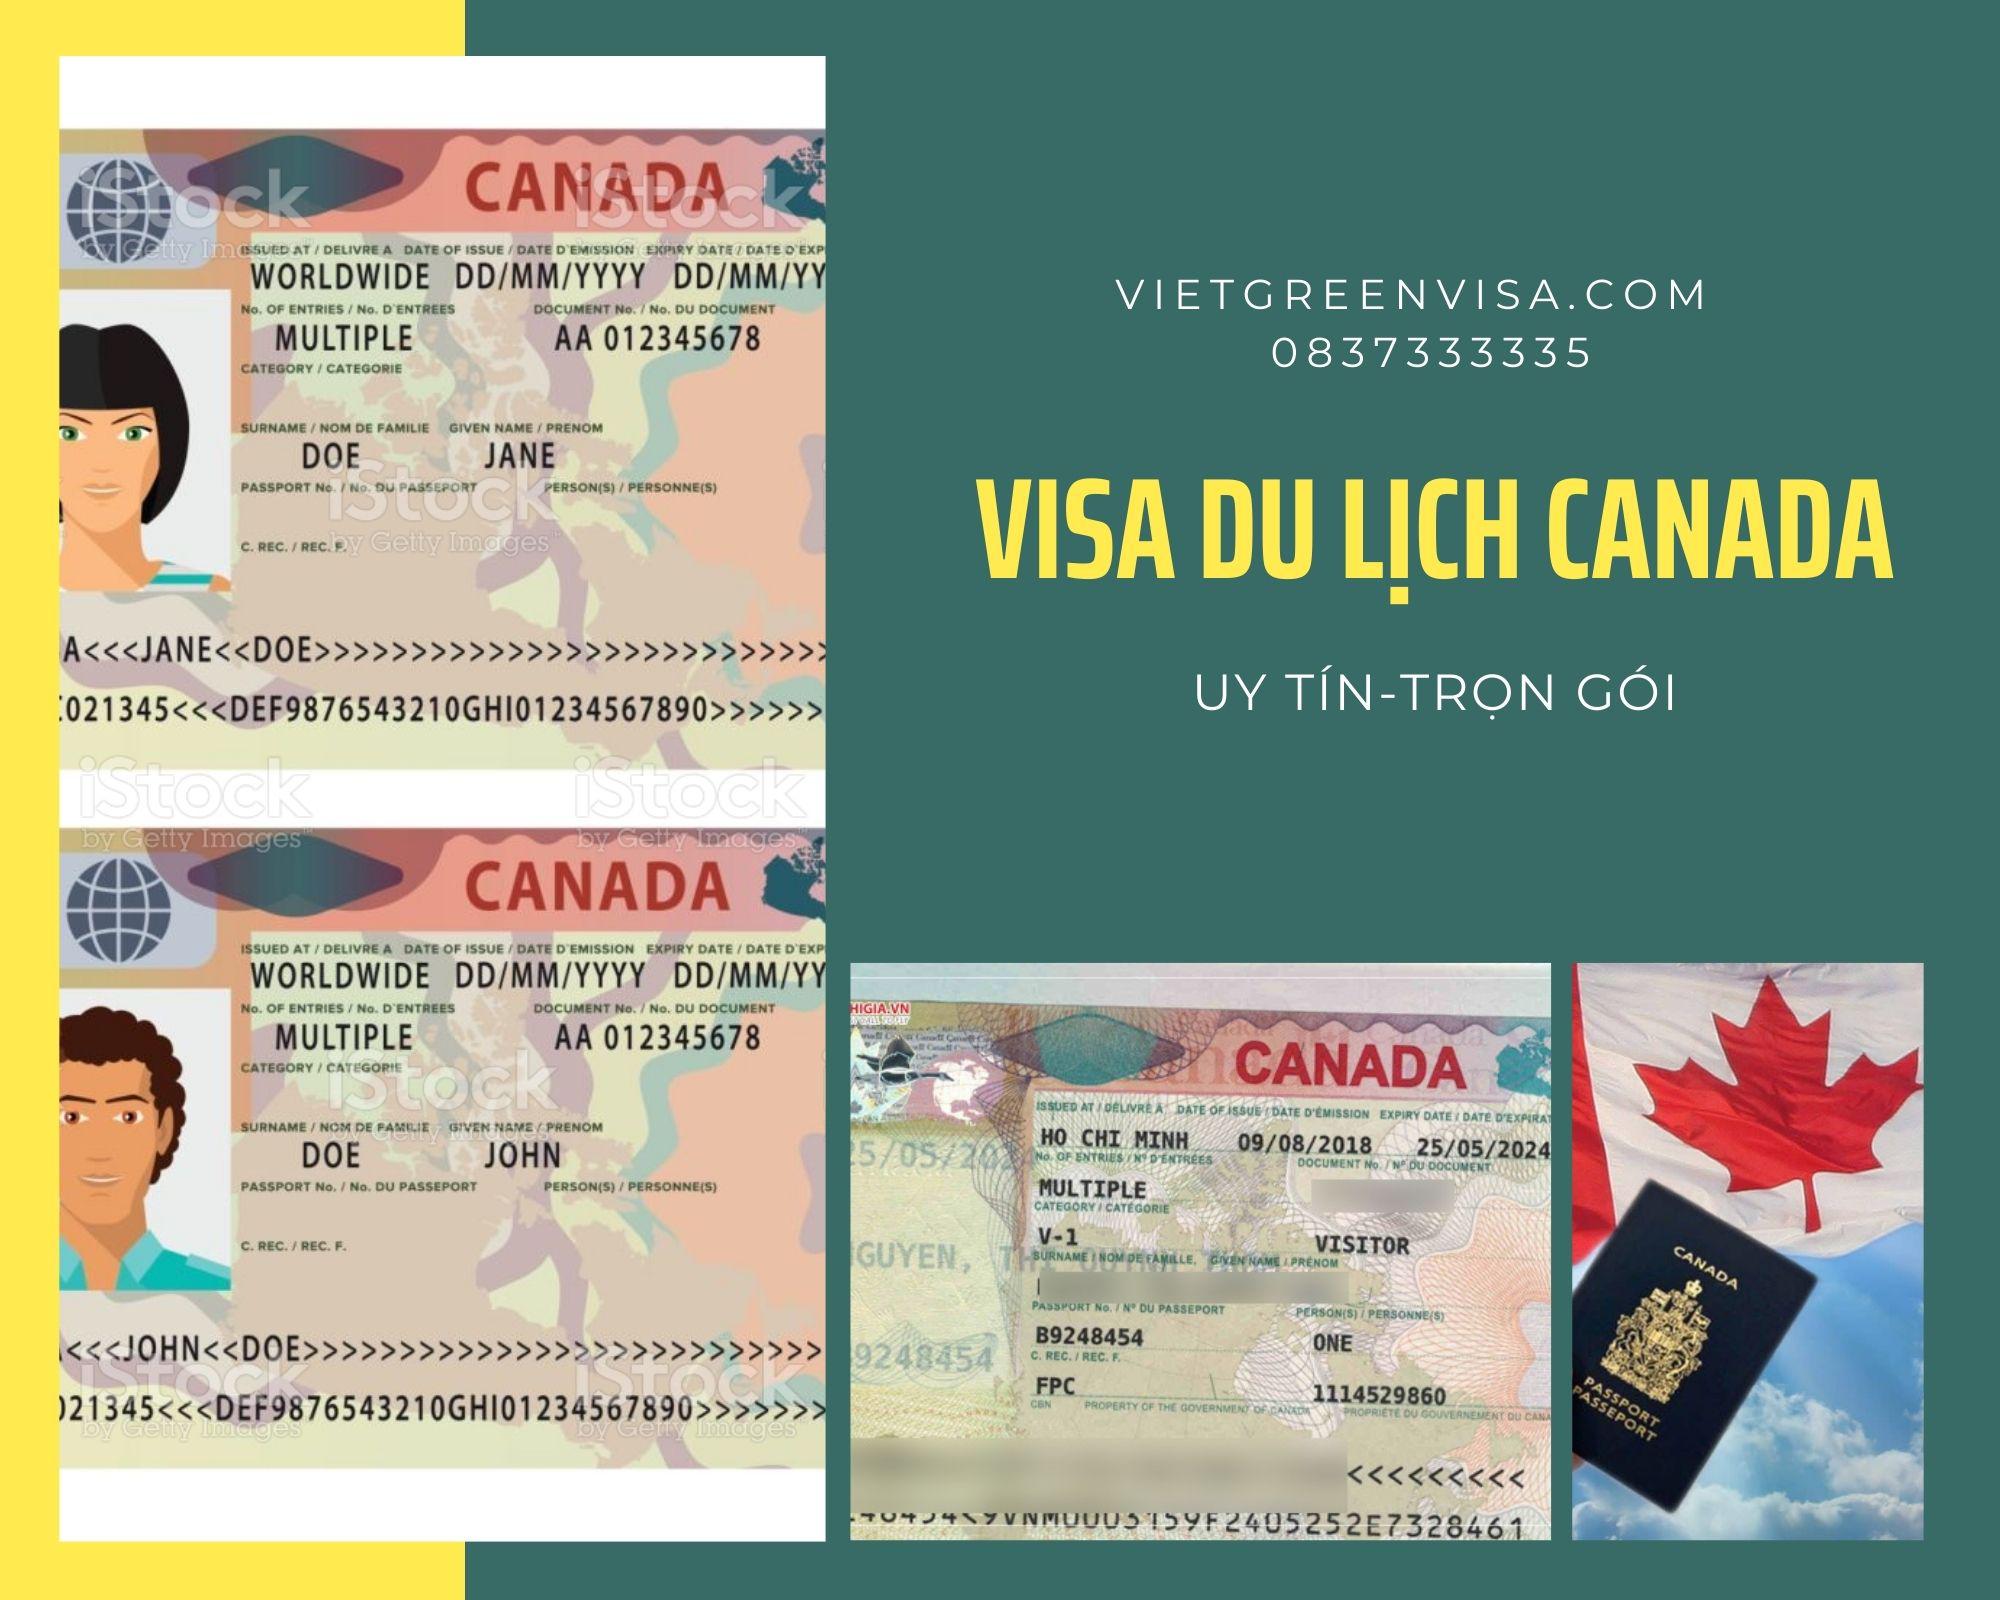 Xn Visa du lịch Canada uy tín, trọn gói, chất lượng